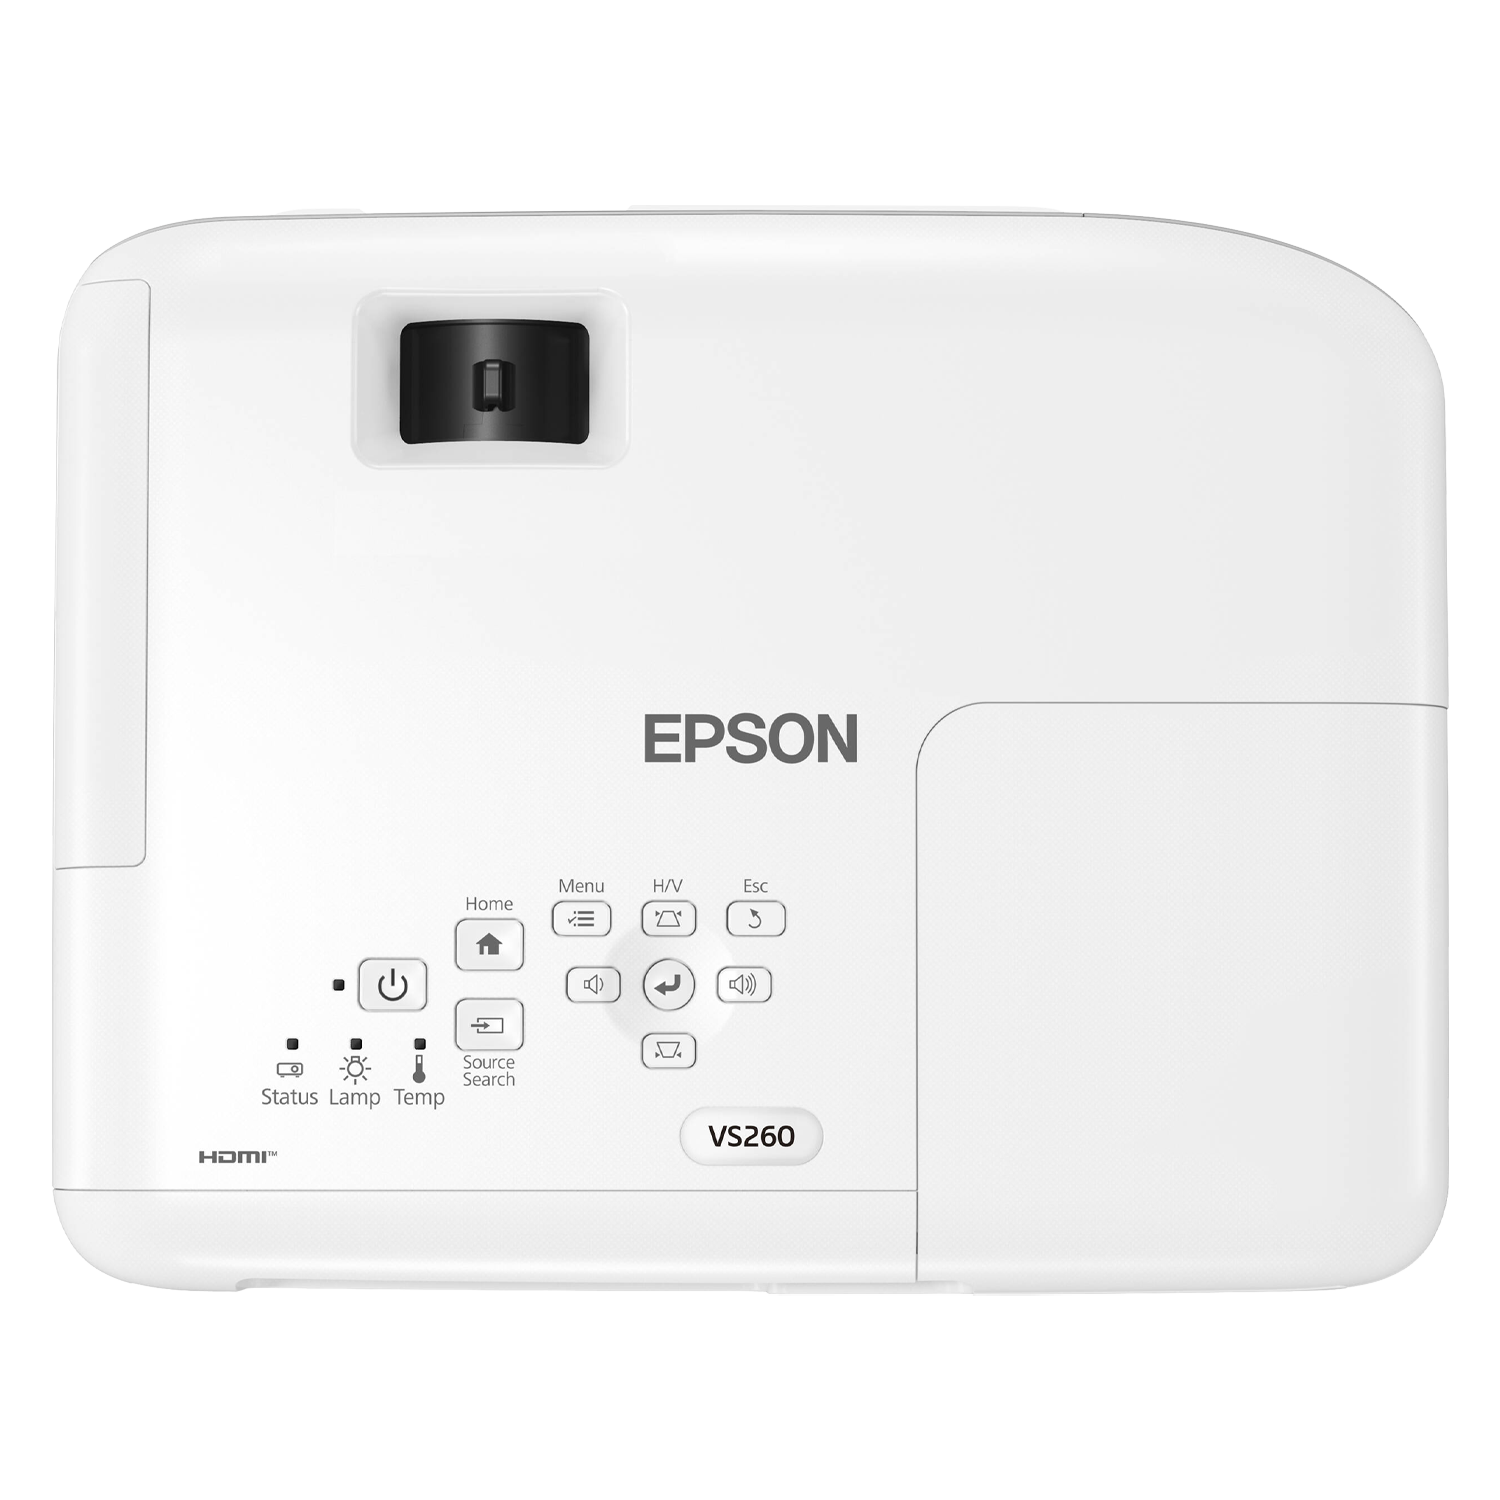 Projetor Epson VS260 3300 Lumens Hdmi / Vga / Usb - White